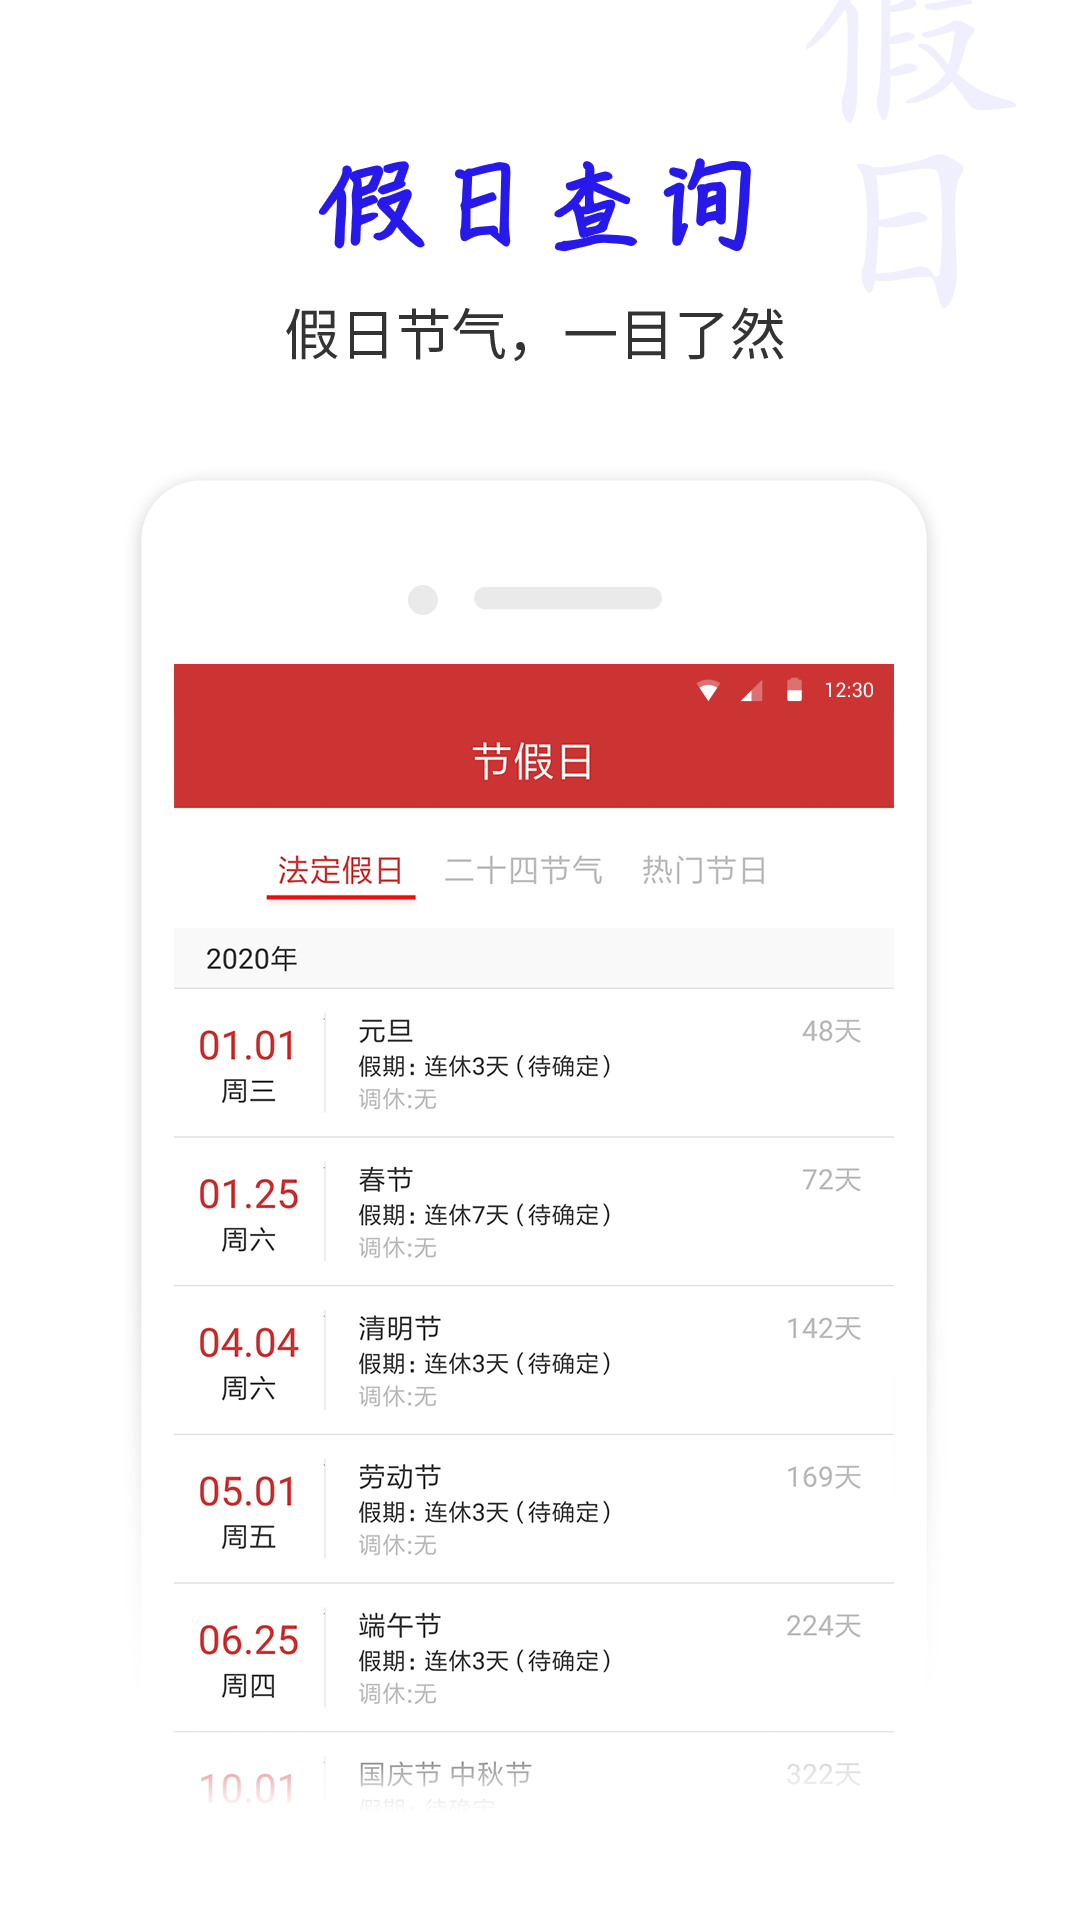 桔子万年历app安卓版下载安装